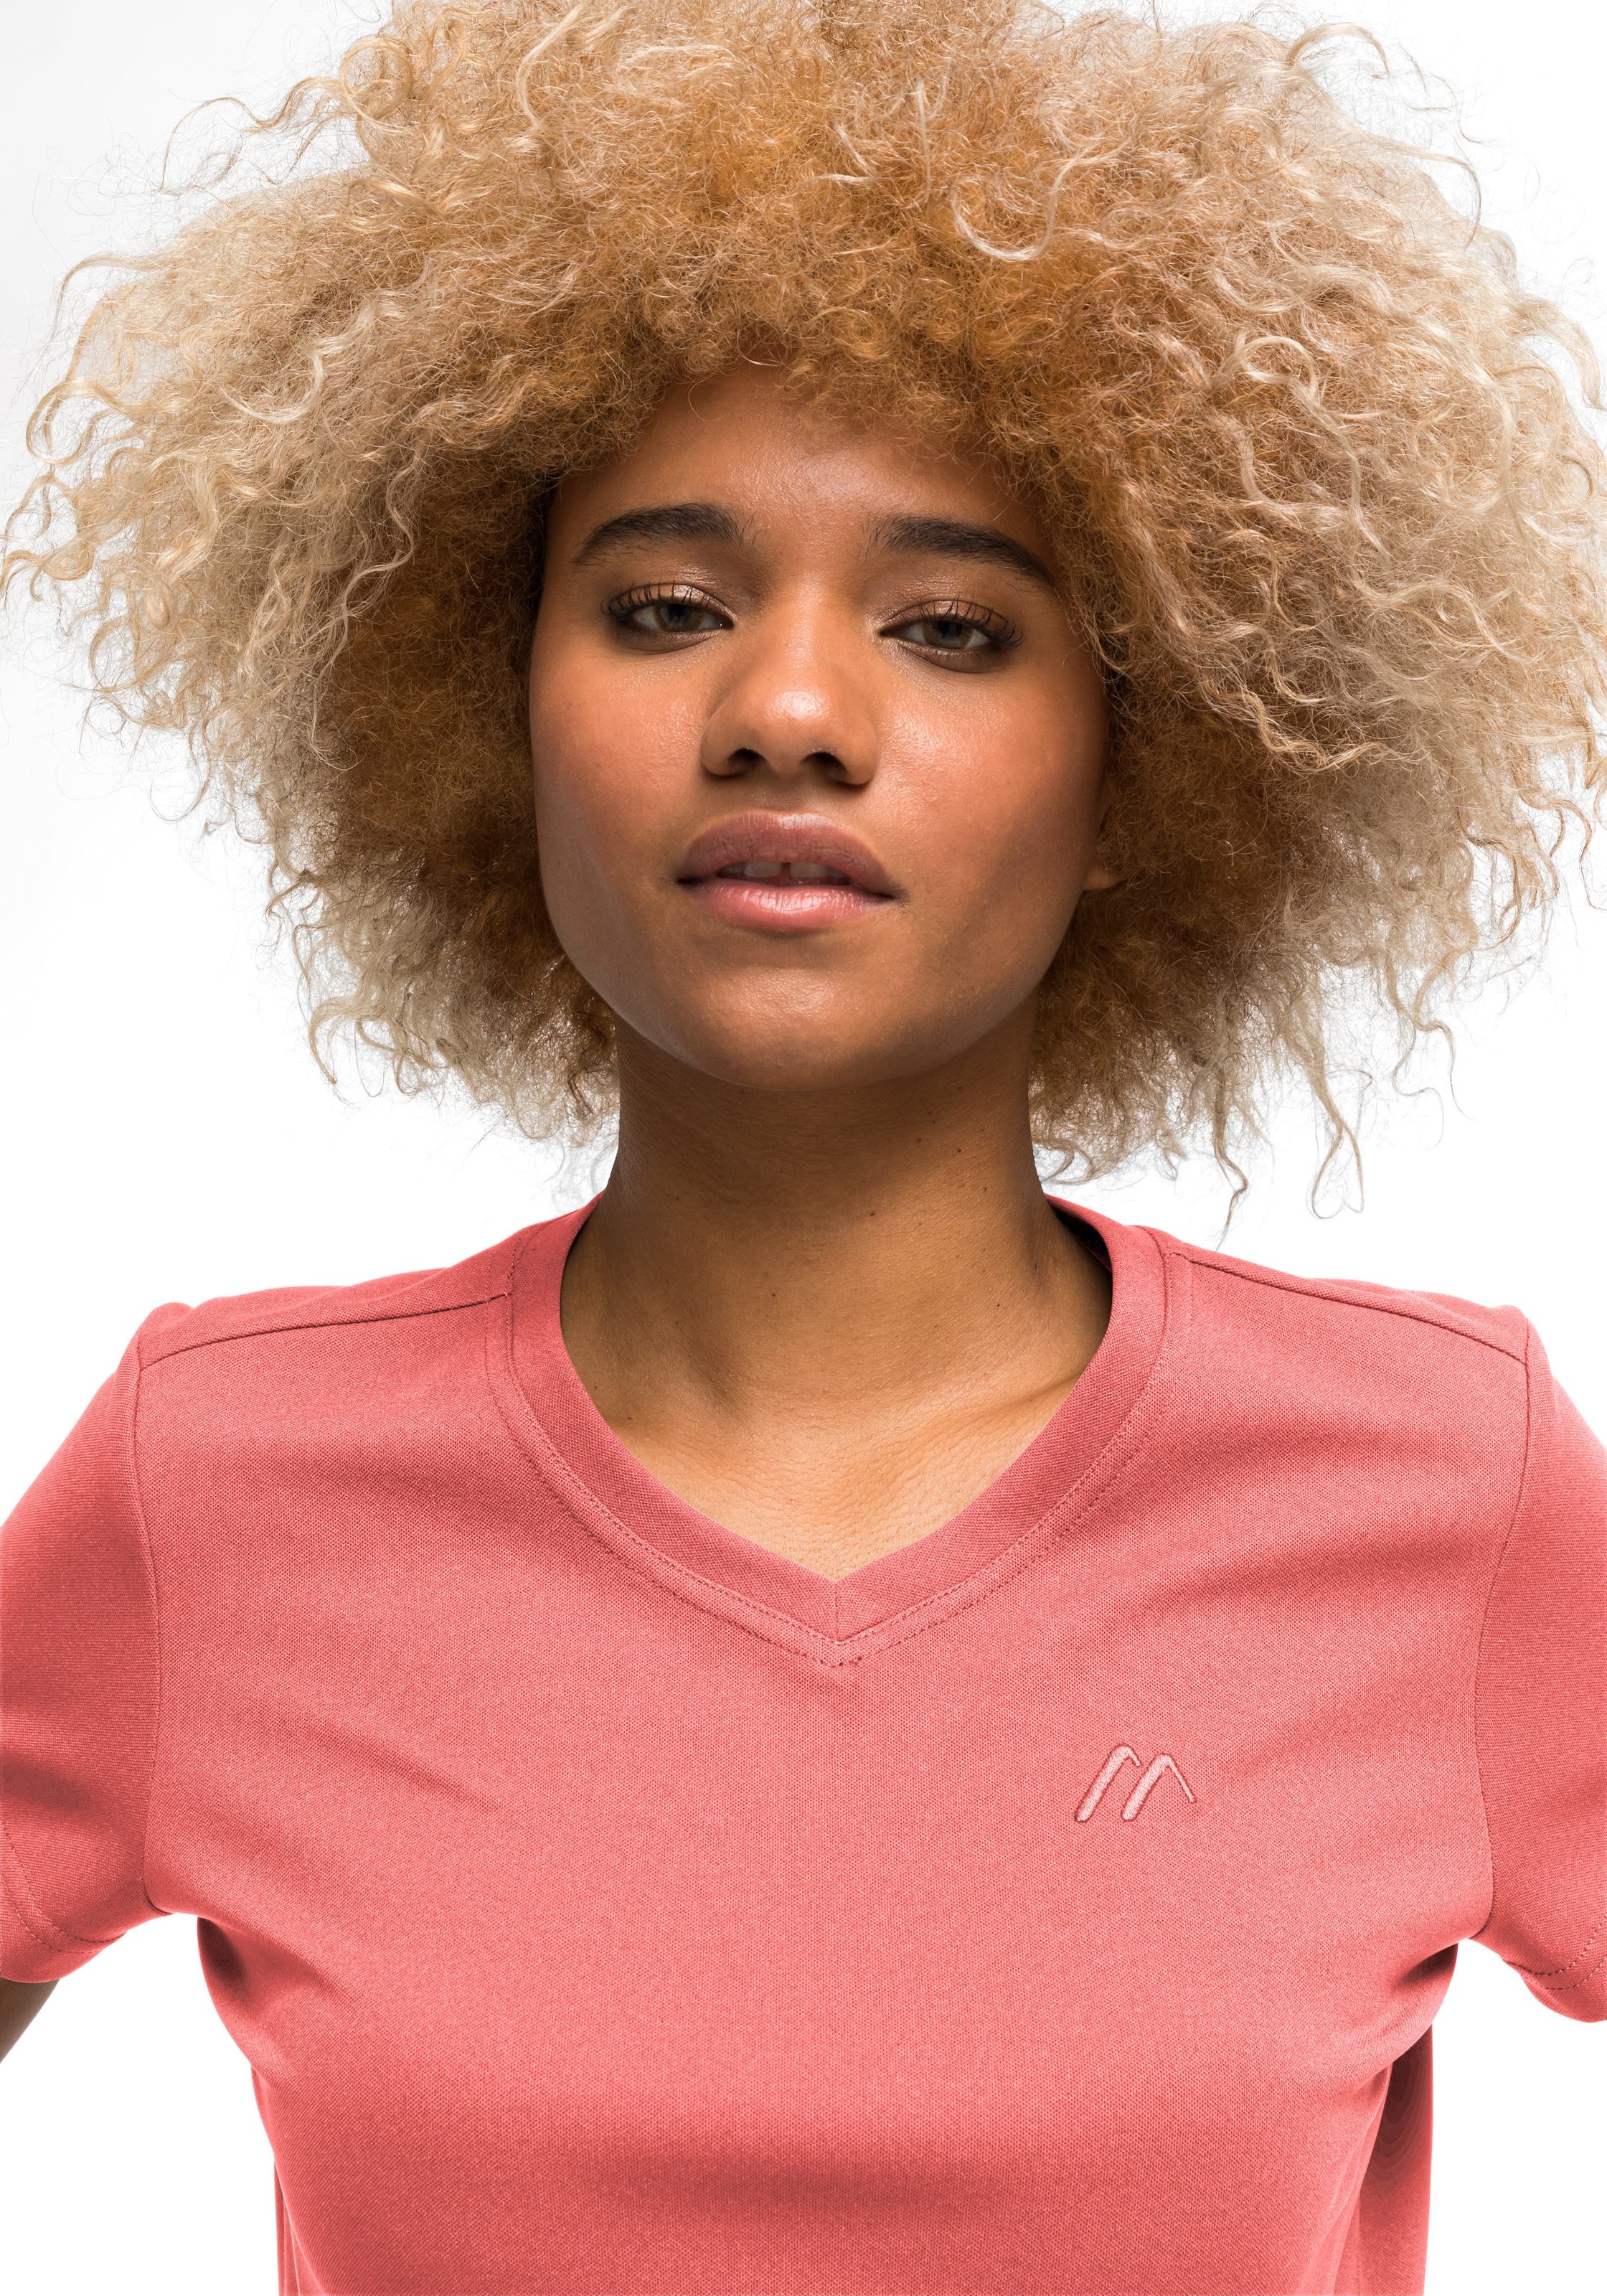 Maier Sports Funktionsshirt »Trudy«, Damen T-Shirt, Kurzarmshirt für Wandern  und Freizeit online kaufen